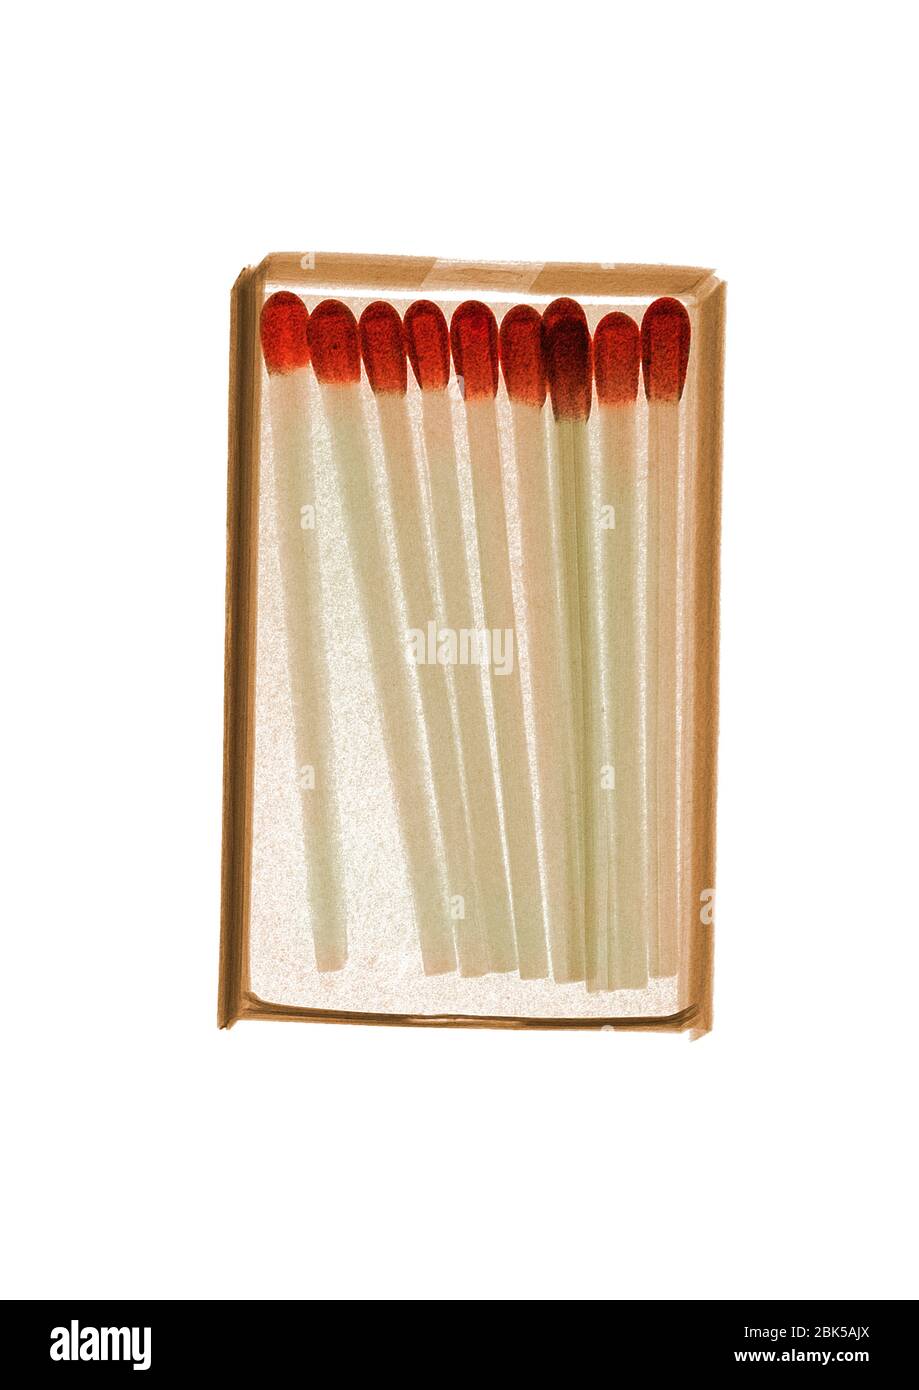 Schachtel mit Streichhölzern, farbige Röntgenstrahlung. Stockfoto